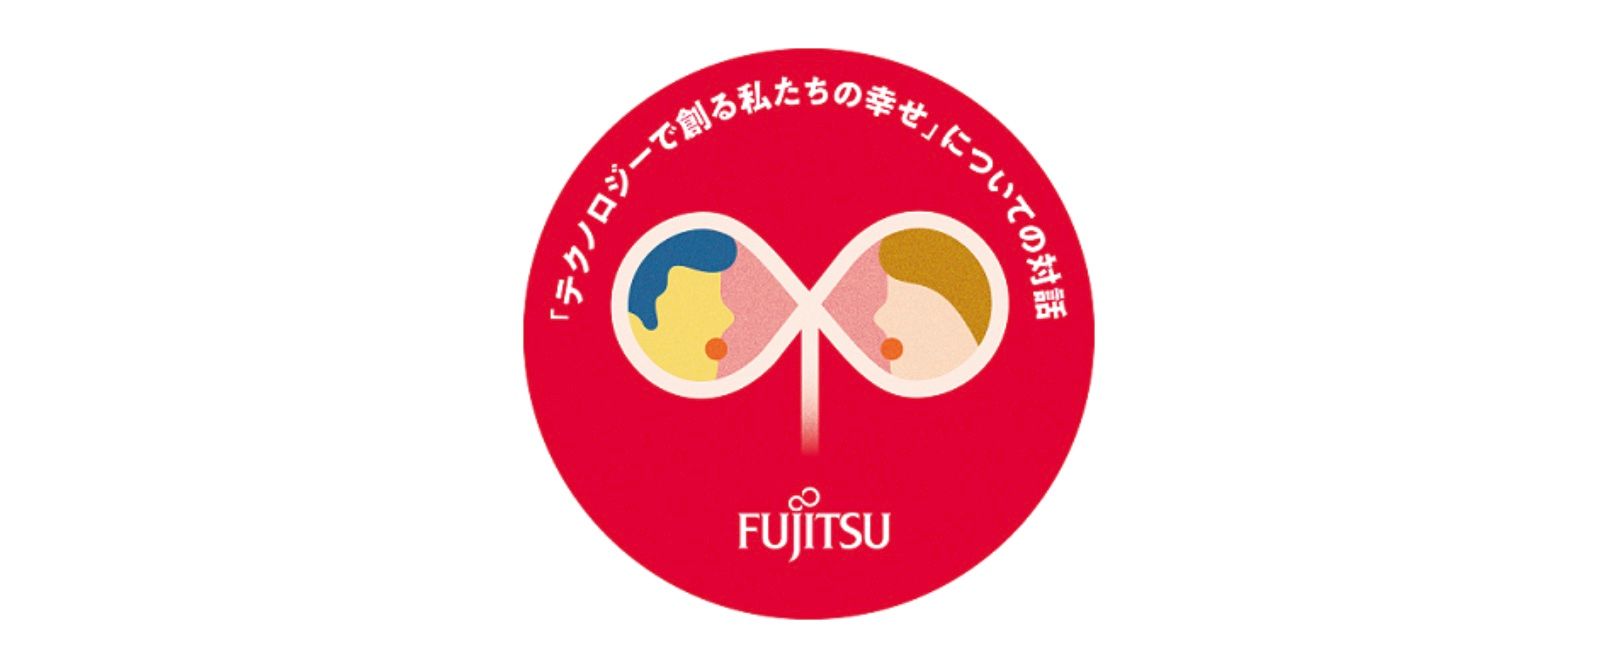 تشارك فوجيتسو في أنشطة الاستماع إلى أصوات الأجيال القادمة من أجل تعزيز الرفاهية الاجتماعية في اليابان